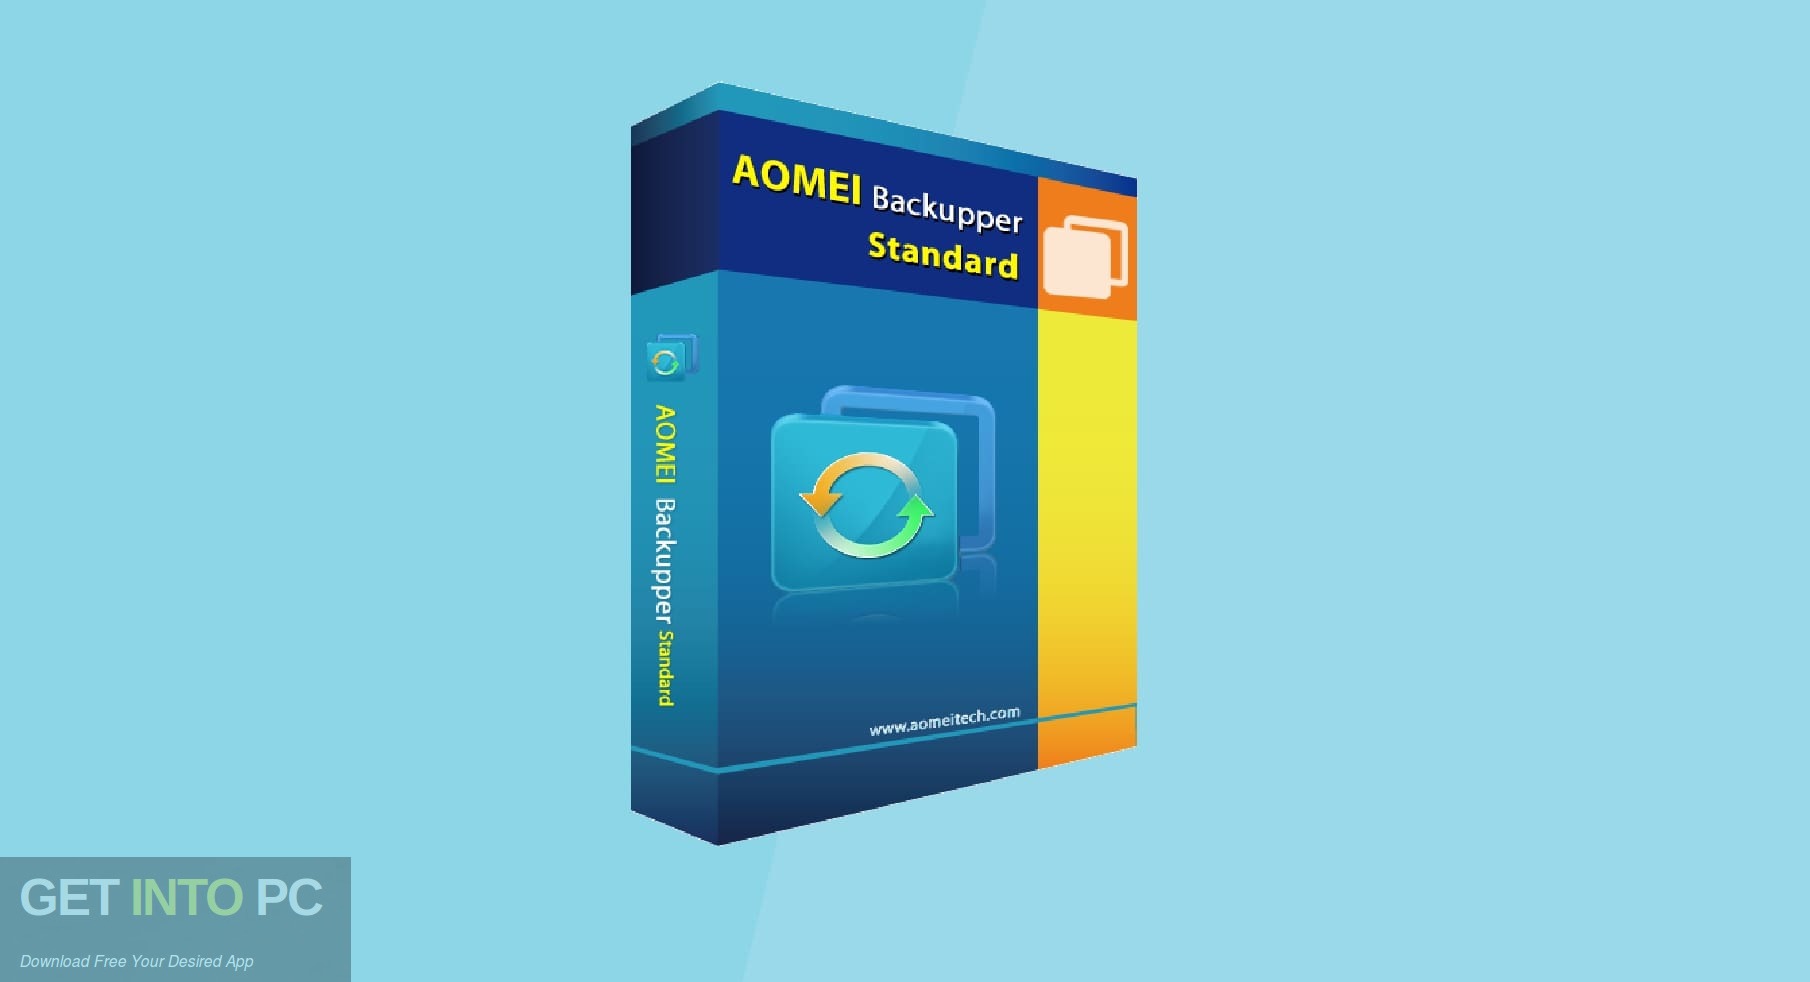 AOMEI Backupper 2020 Free Download